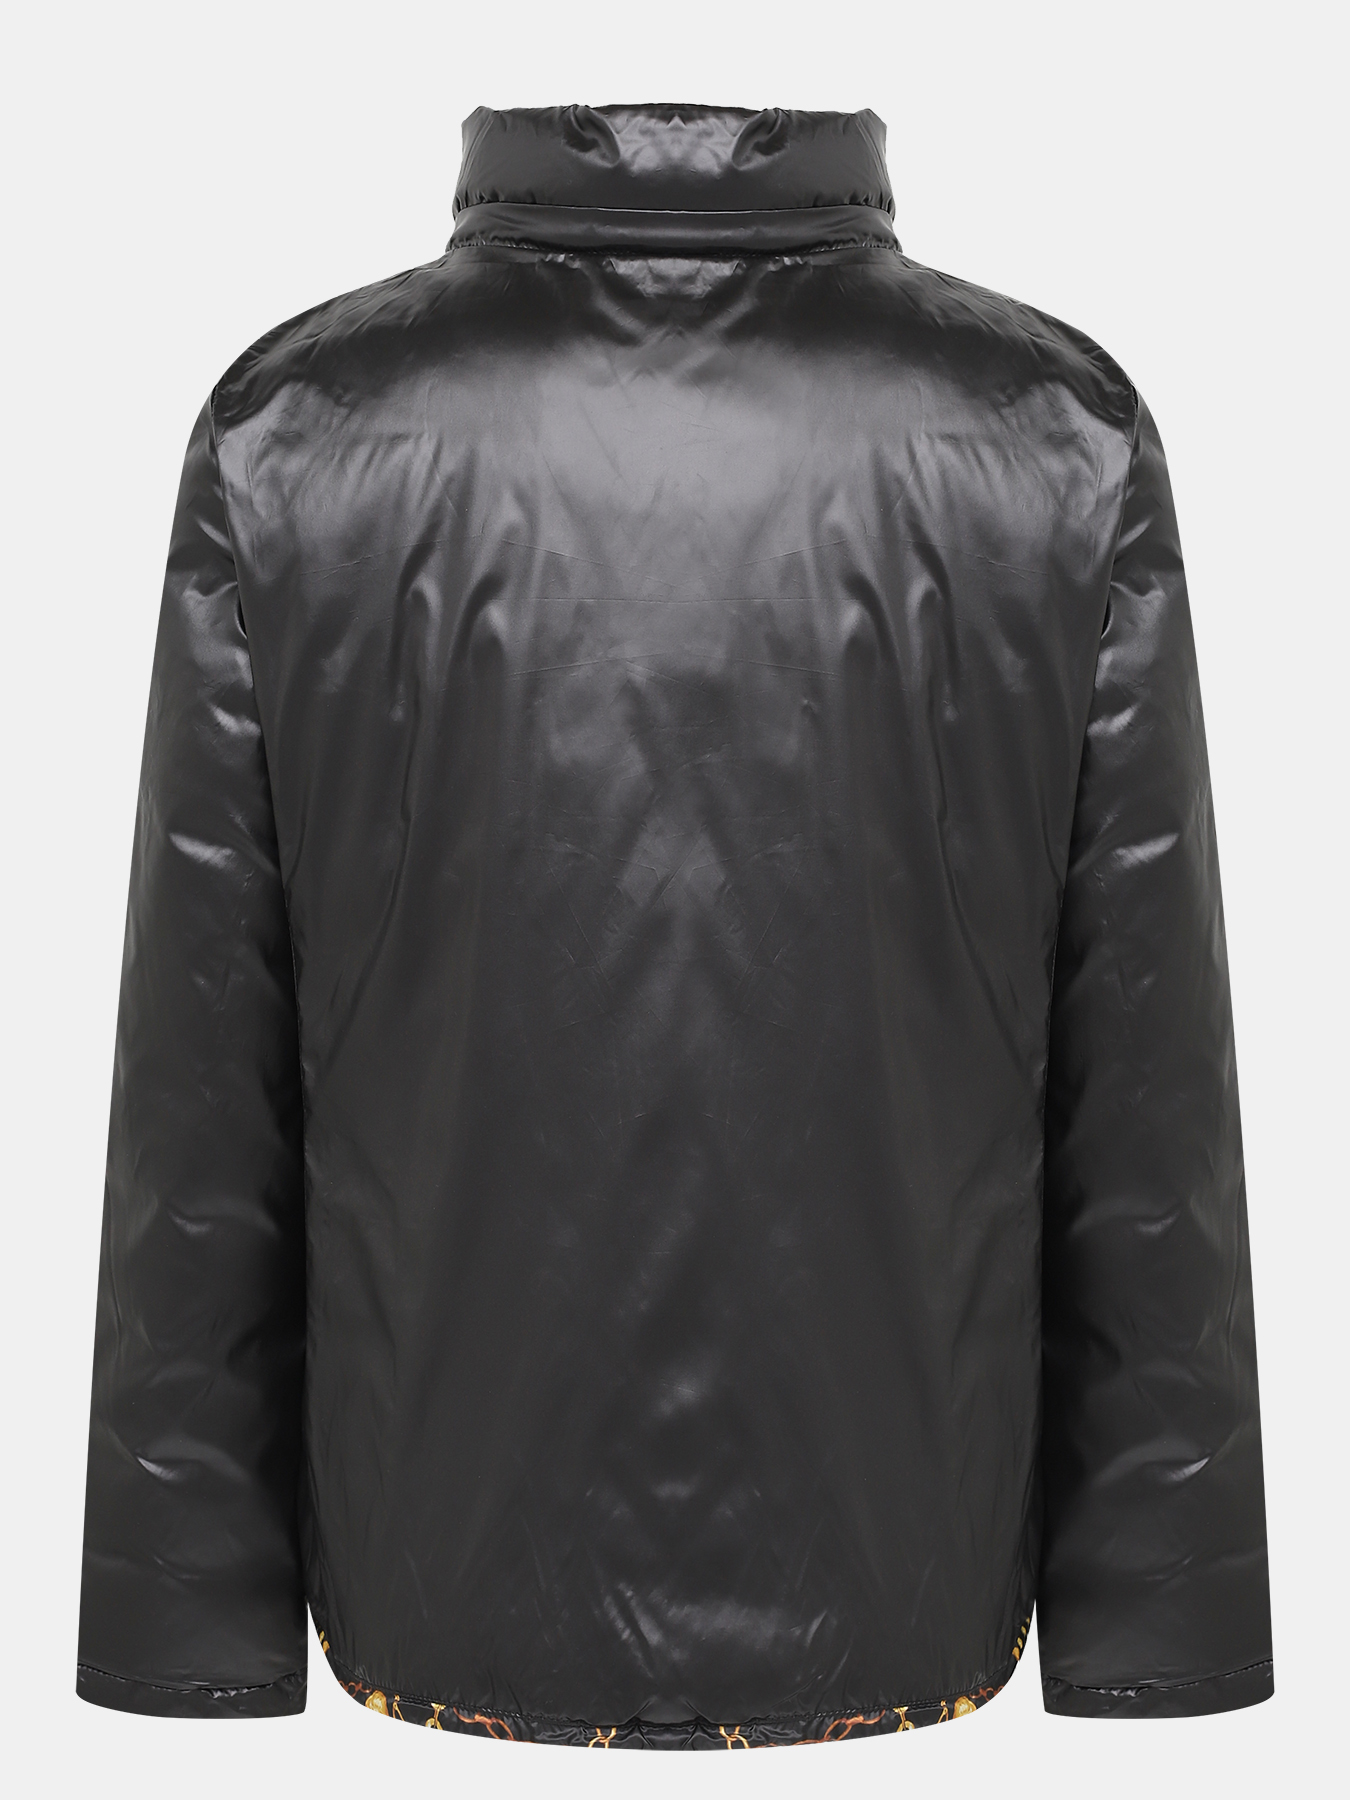 Двусторонняя куртка Alessandro Manzoni Purpur 405288-009, цвет мультиколор, размер 56-58 - фото 4